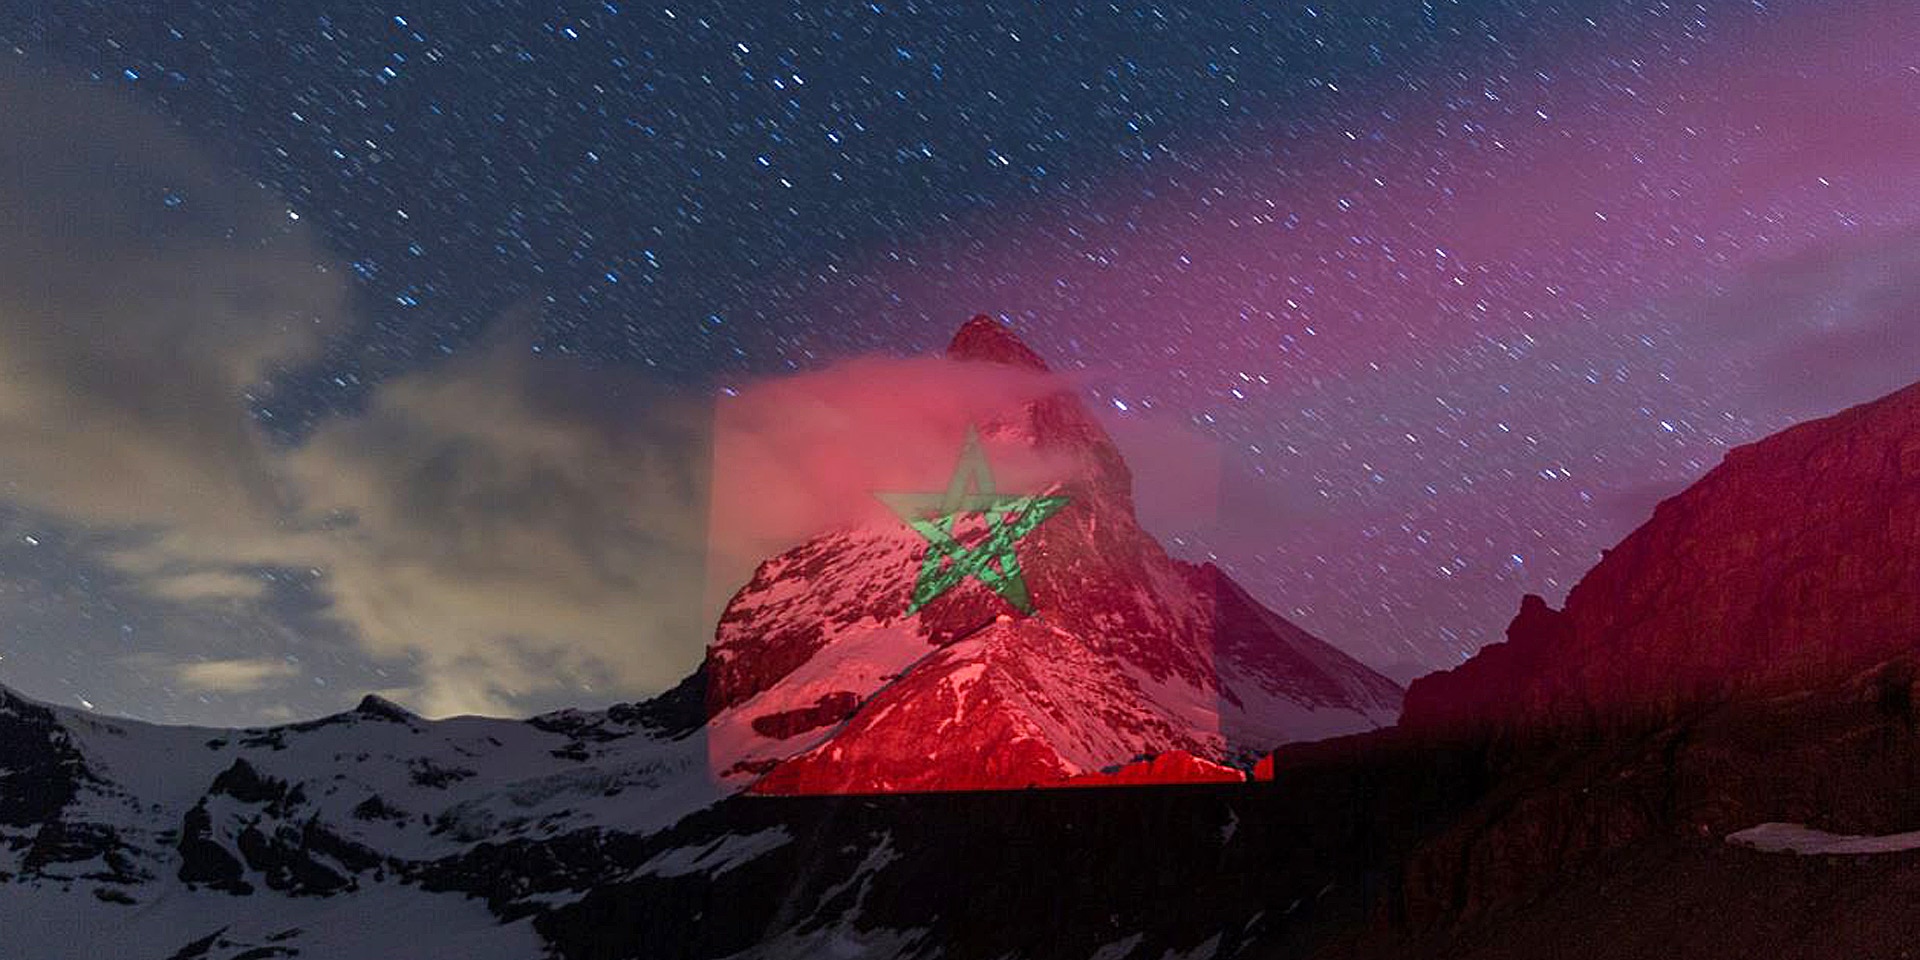 Le drapeau du Maroc, drapeau rouge et vert, est projeté sur l’iconique montagne suisse du Cervin.